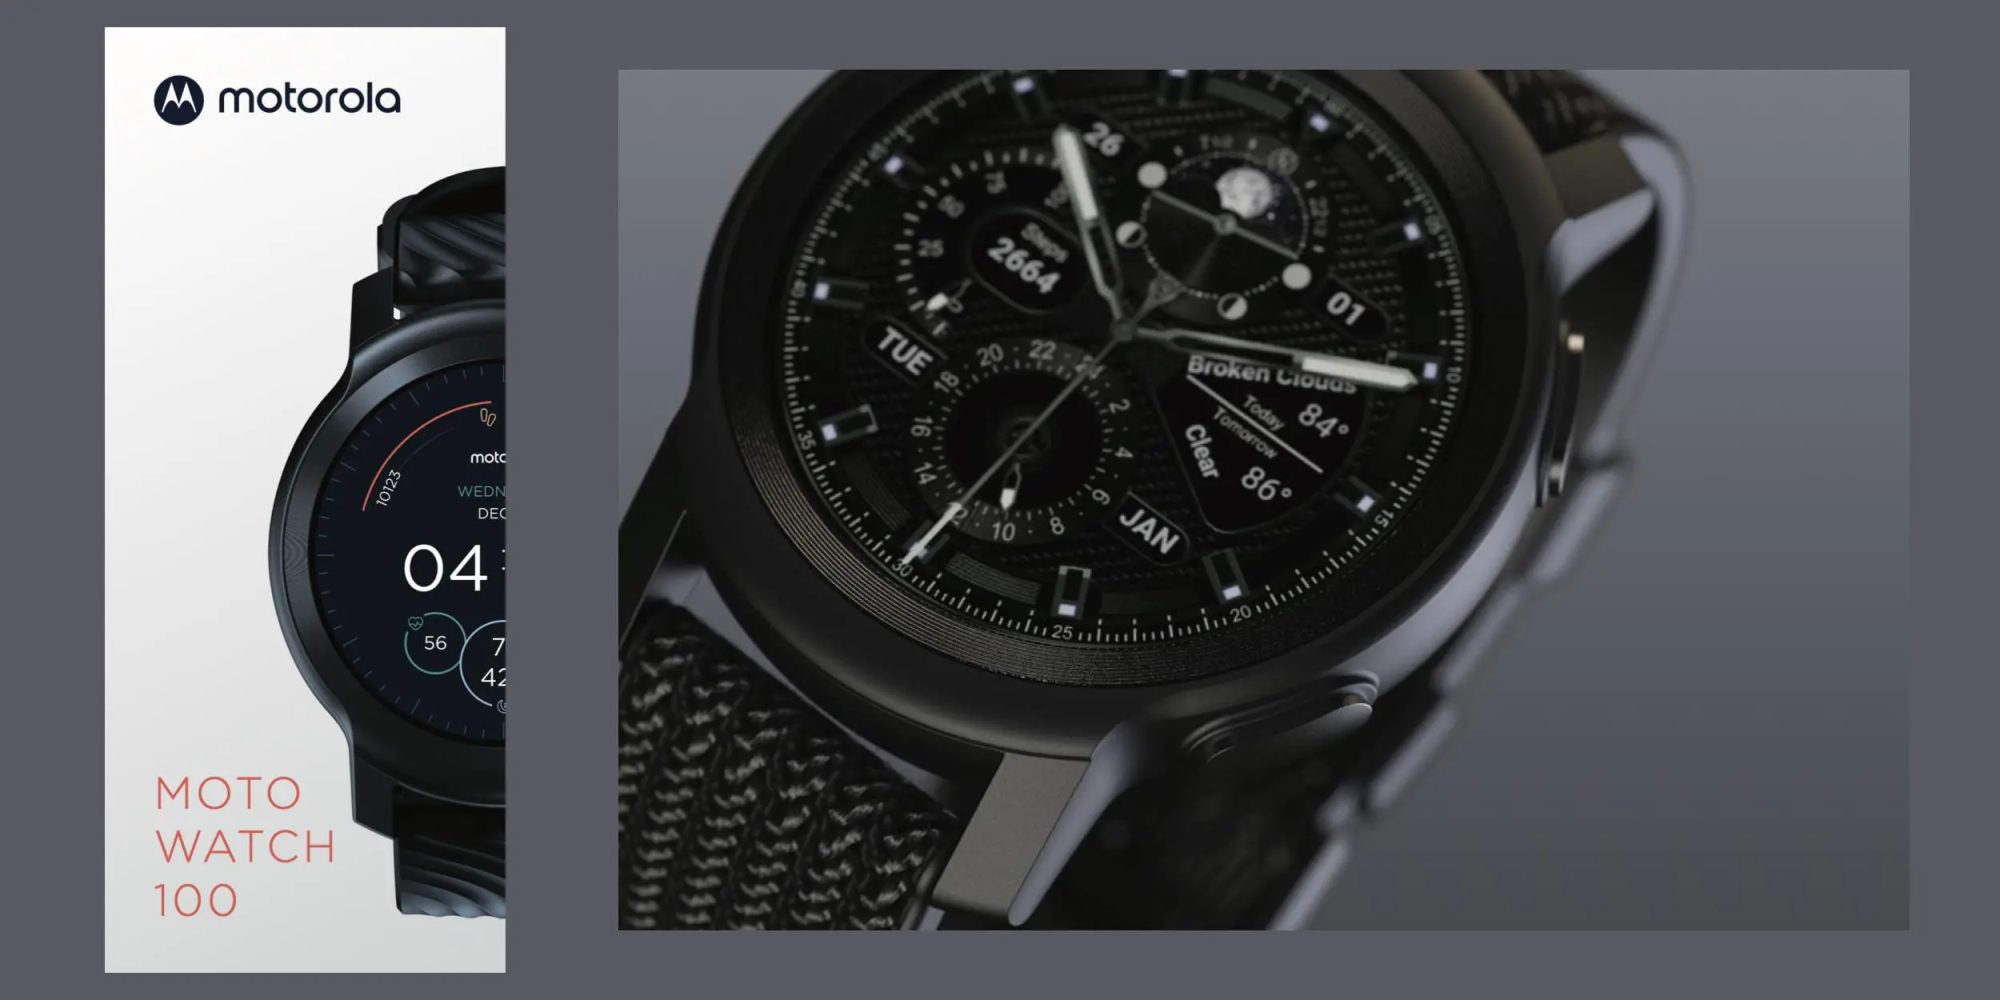 Moto Watch 100 - tak będzie nazywał się kolejny smartwatch, który zostanie wydany pod marką Motorola